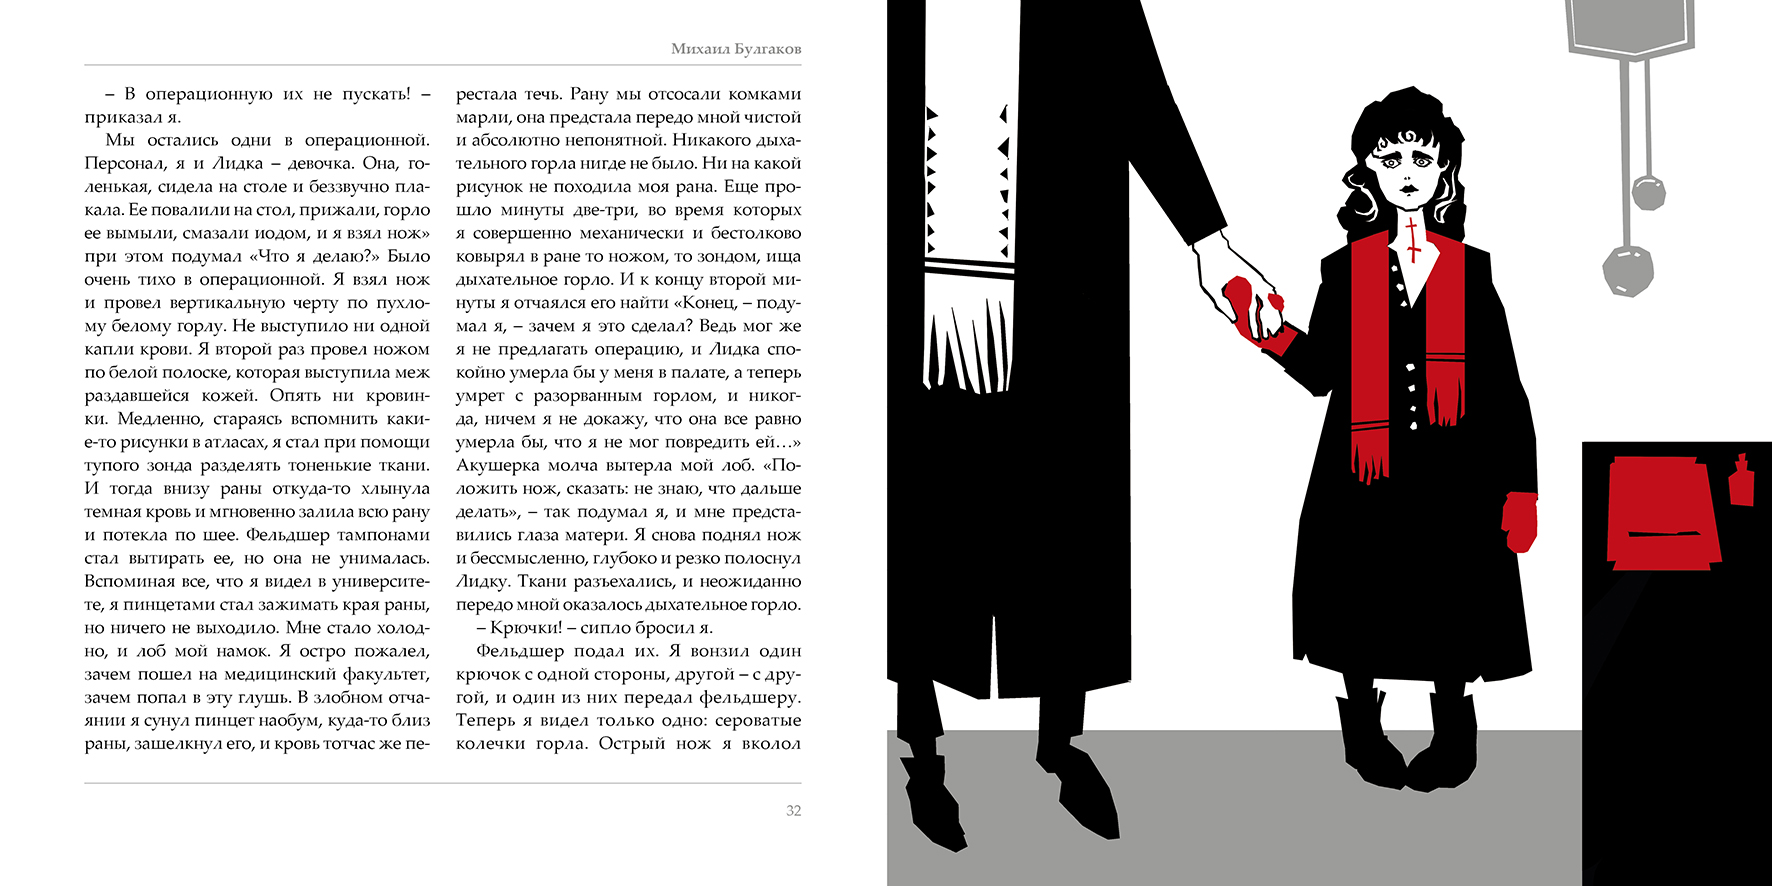 Иллюстрации Анастасии Гринченко к «Запискам юного врача»